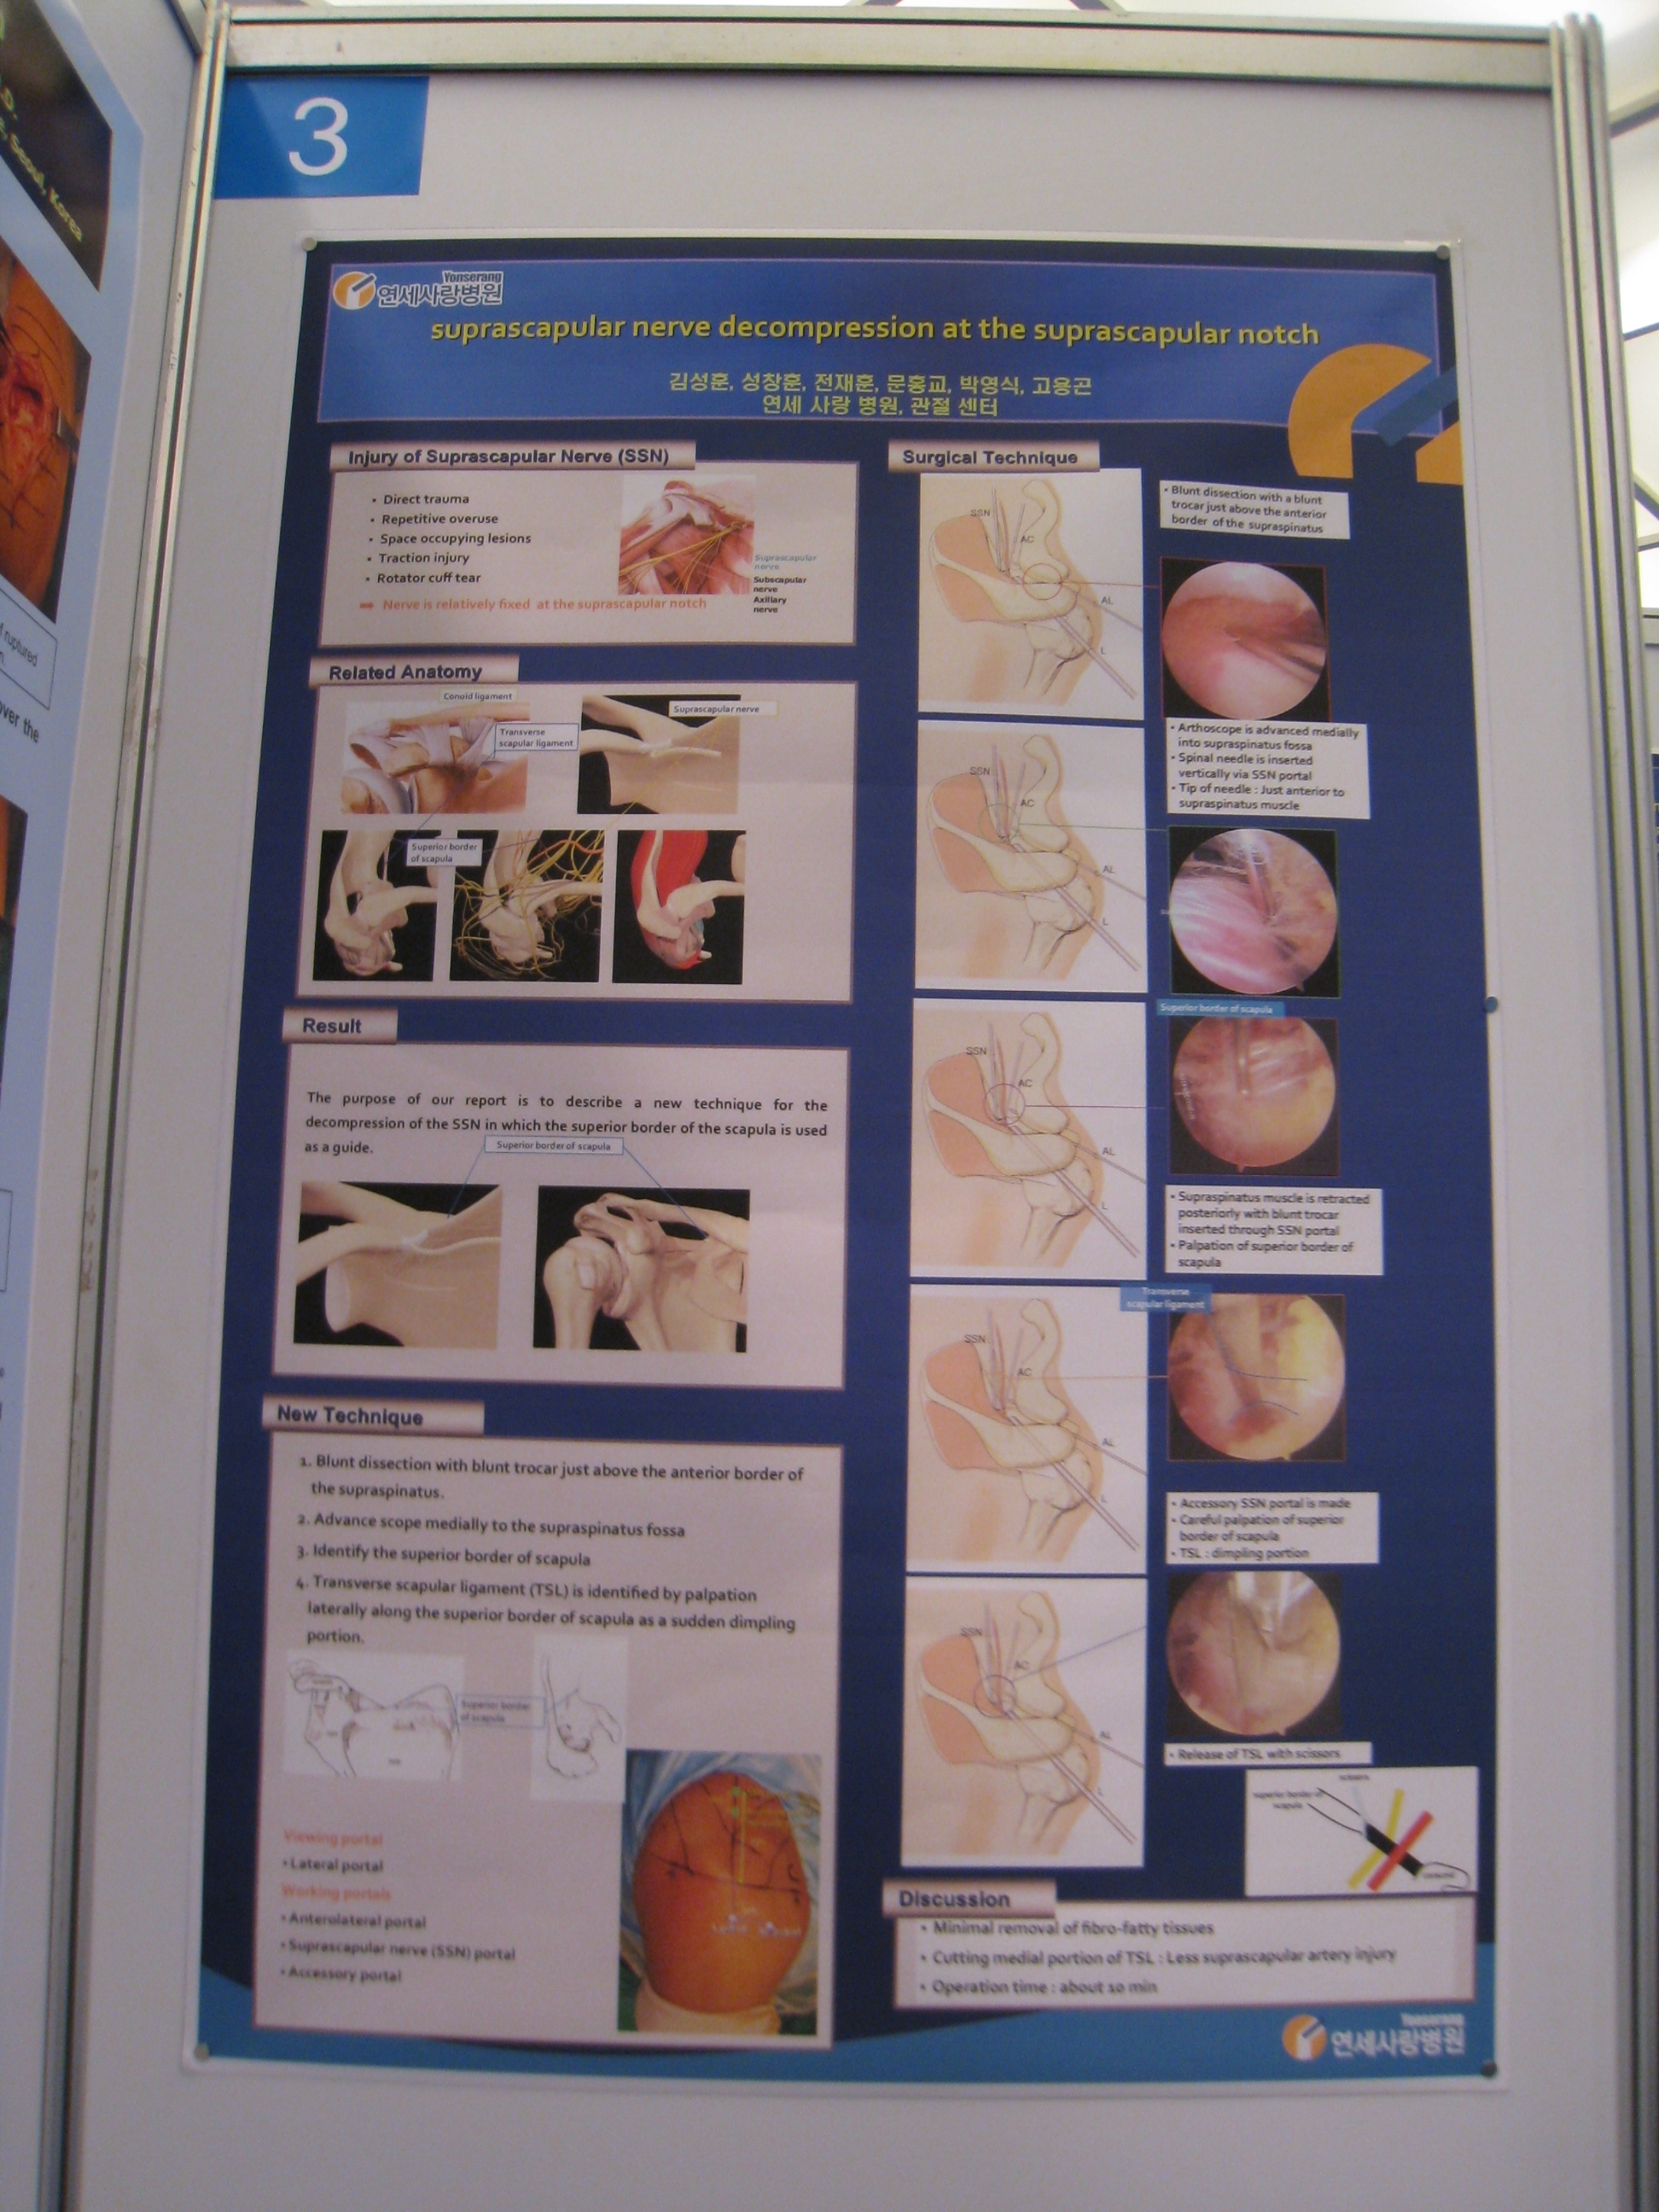 [2009 대한정형외과 학회 포스터] 관절 내시경을 이용한 견갑상 절흔에서의 견감상 신경 감압술 게시글의 2번째 첨부파일입니다.